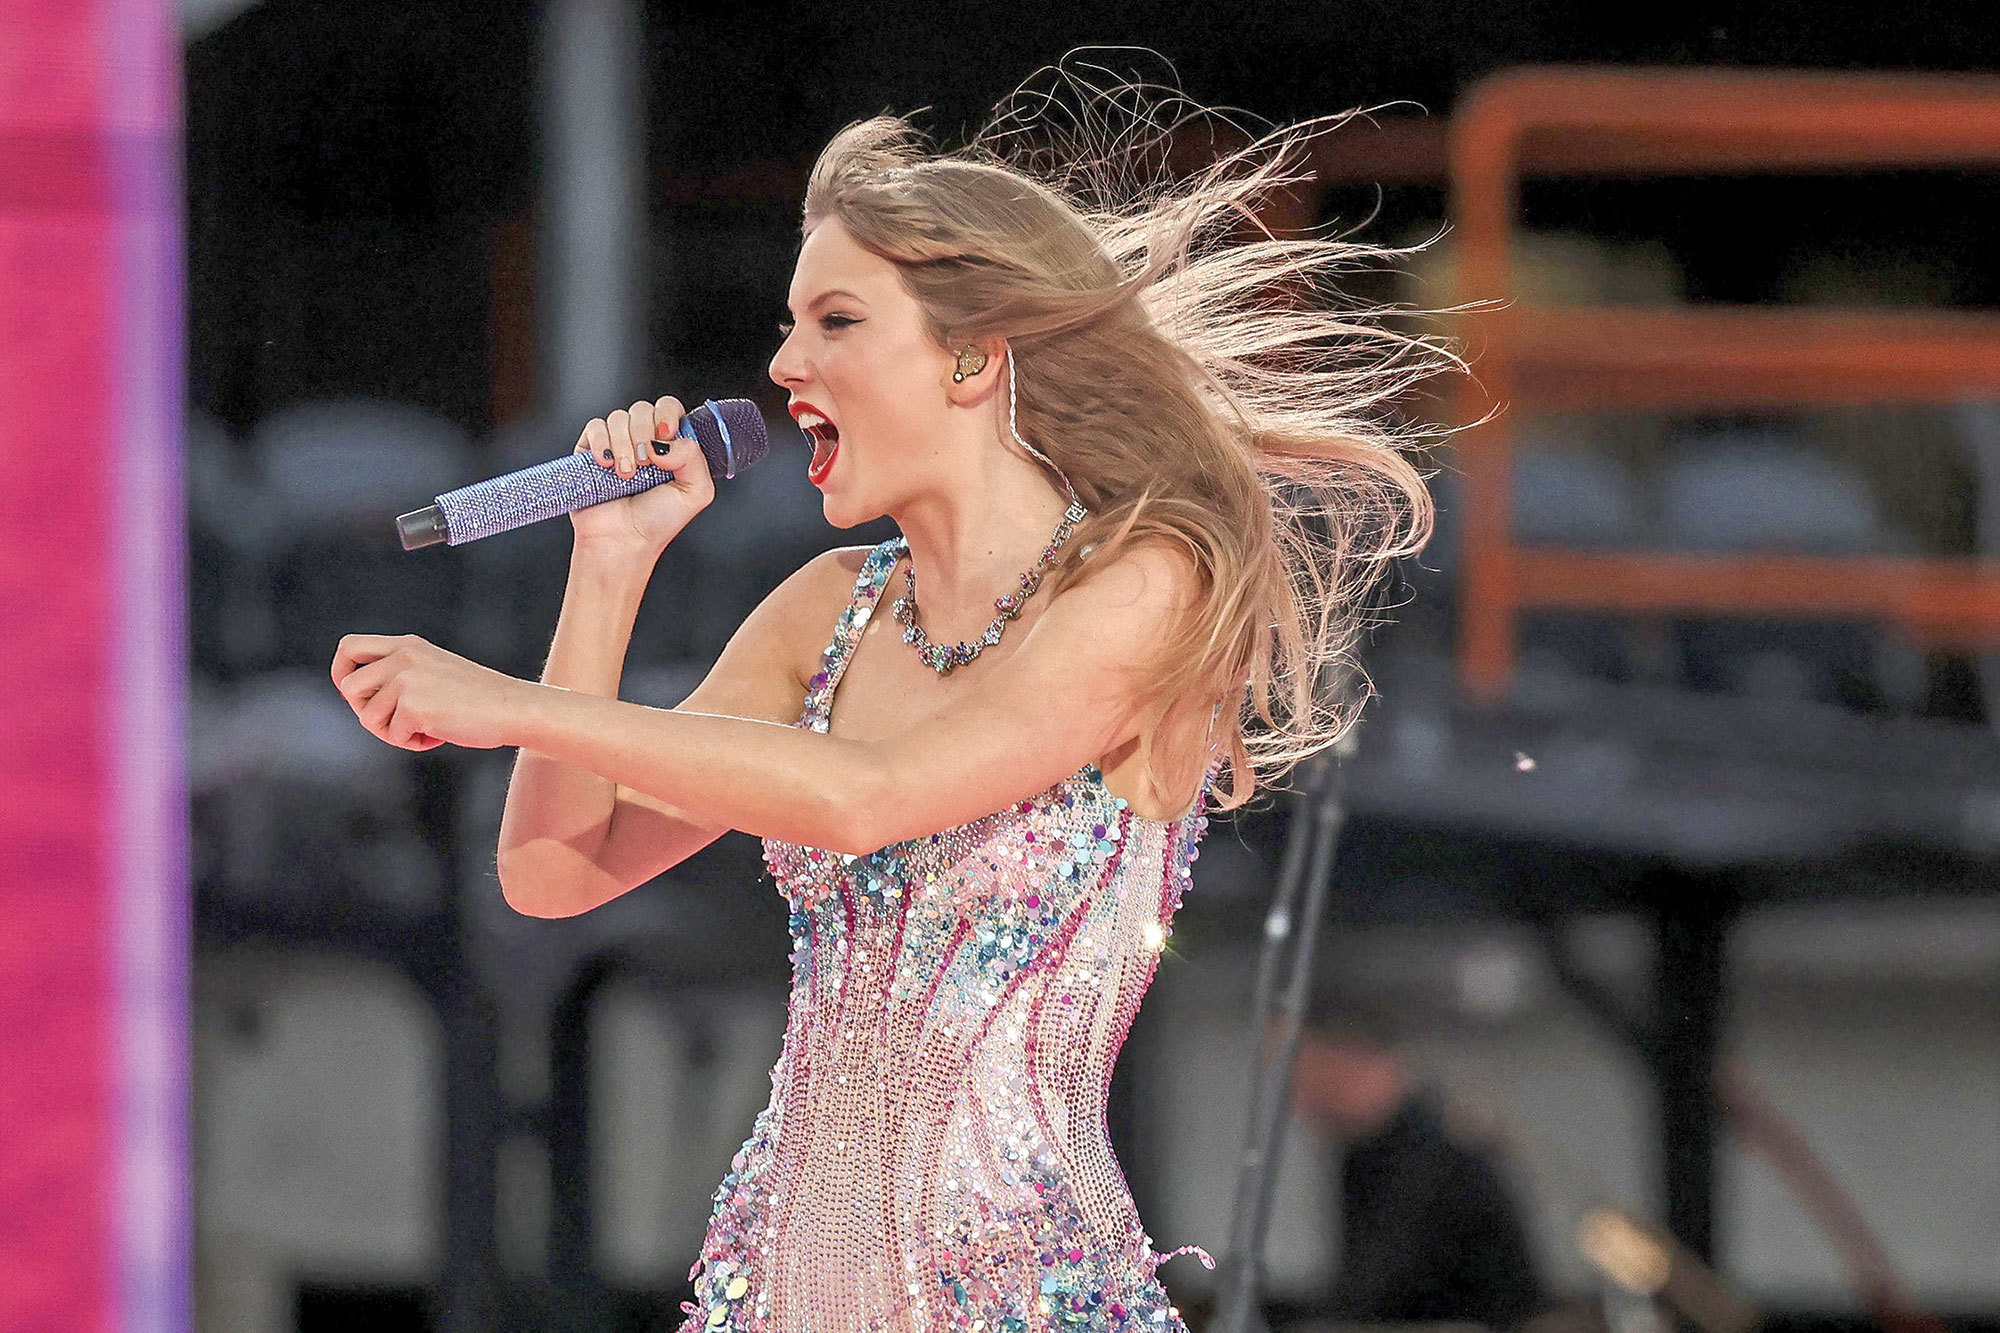 Turneul cântăreţei americane Taylor Swift în Europa urcă preţurile hotelurilor la cer